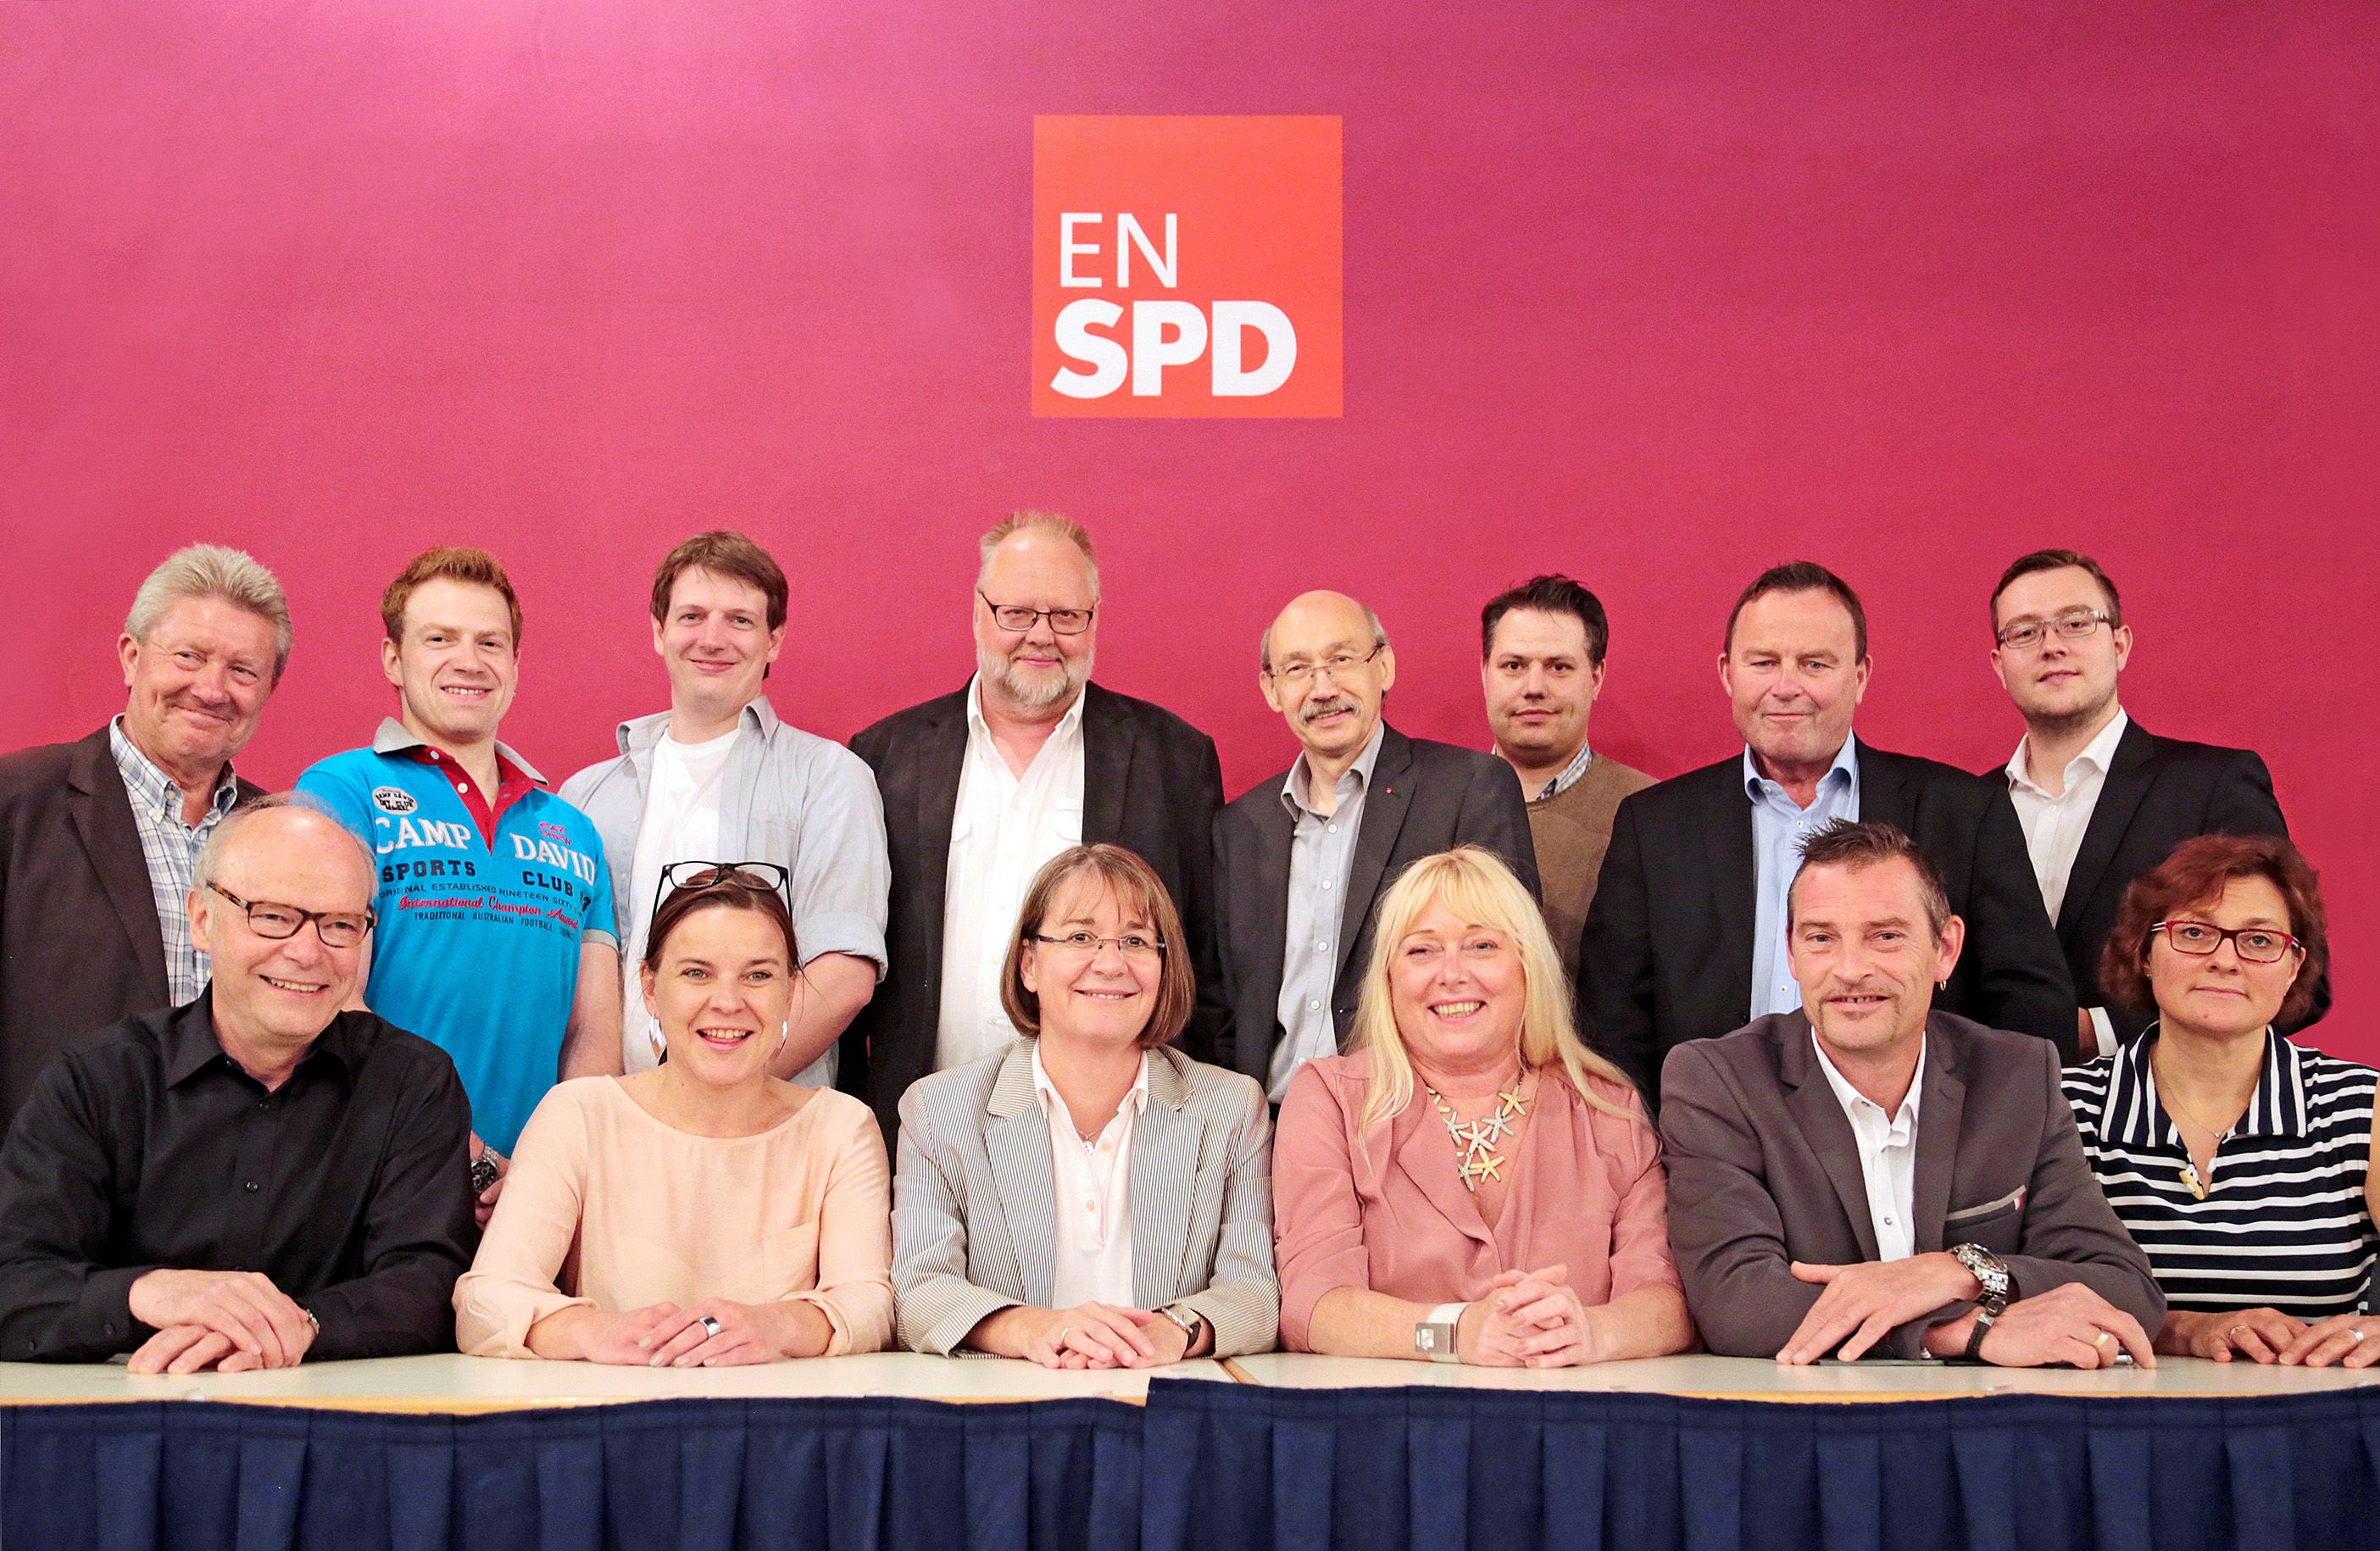 EN-SPD